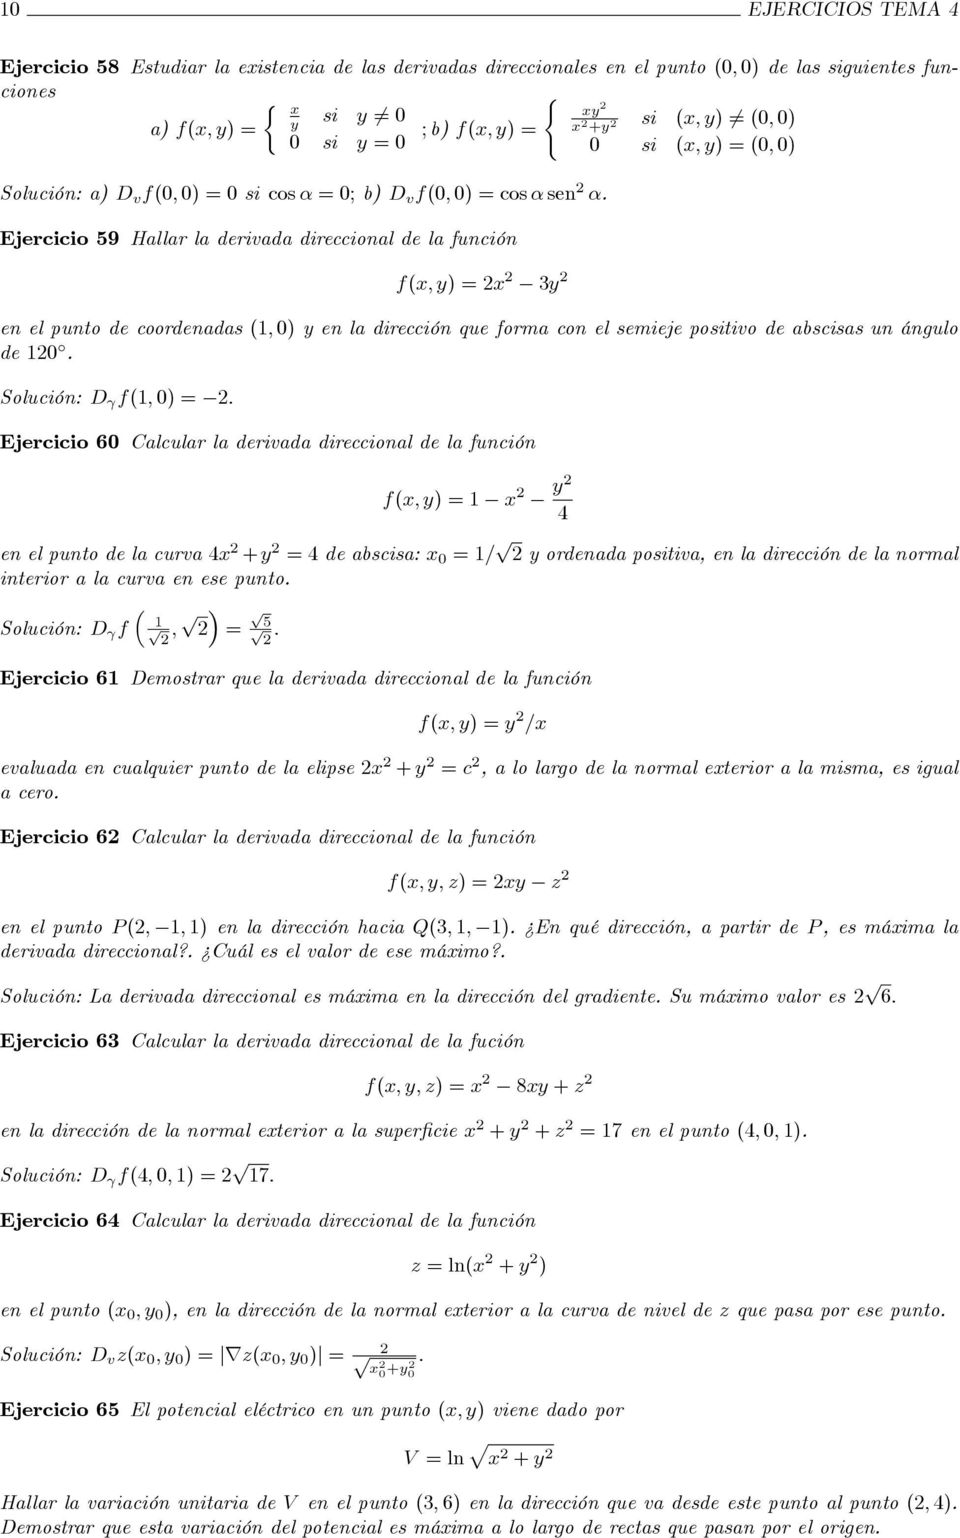 Solución: D f1; 0) = : Ejercicio 60 Calcular la derivada direccional de la función 1 en el punto de la curva 4 + = 4 de abscisa: 0 = 1= p ordenada positiva, en la dirección de la normal interior a la